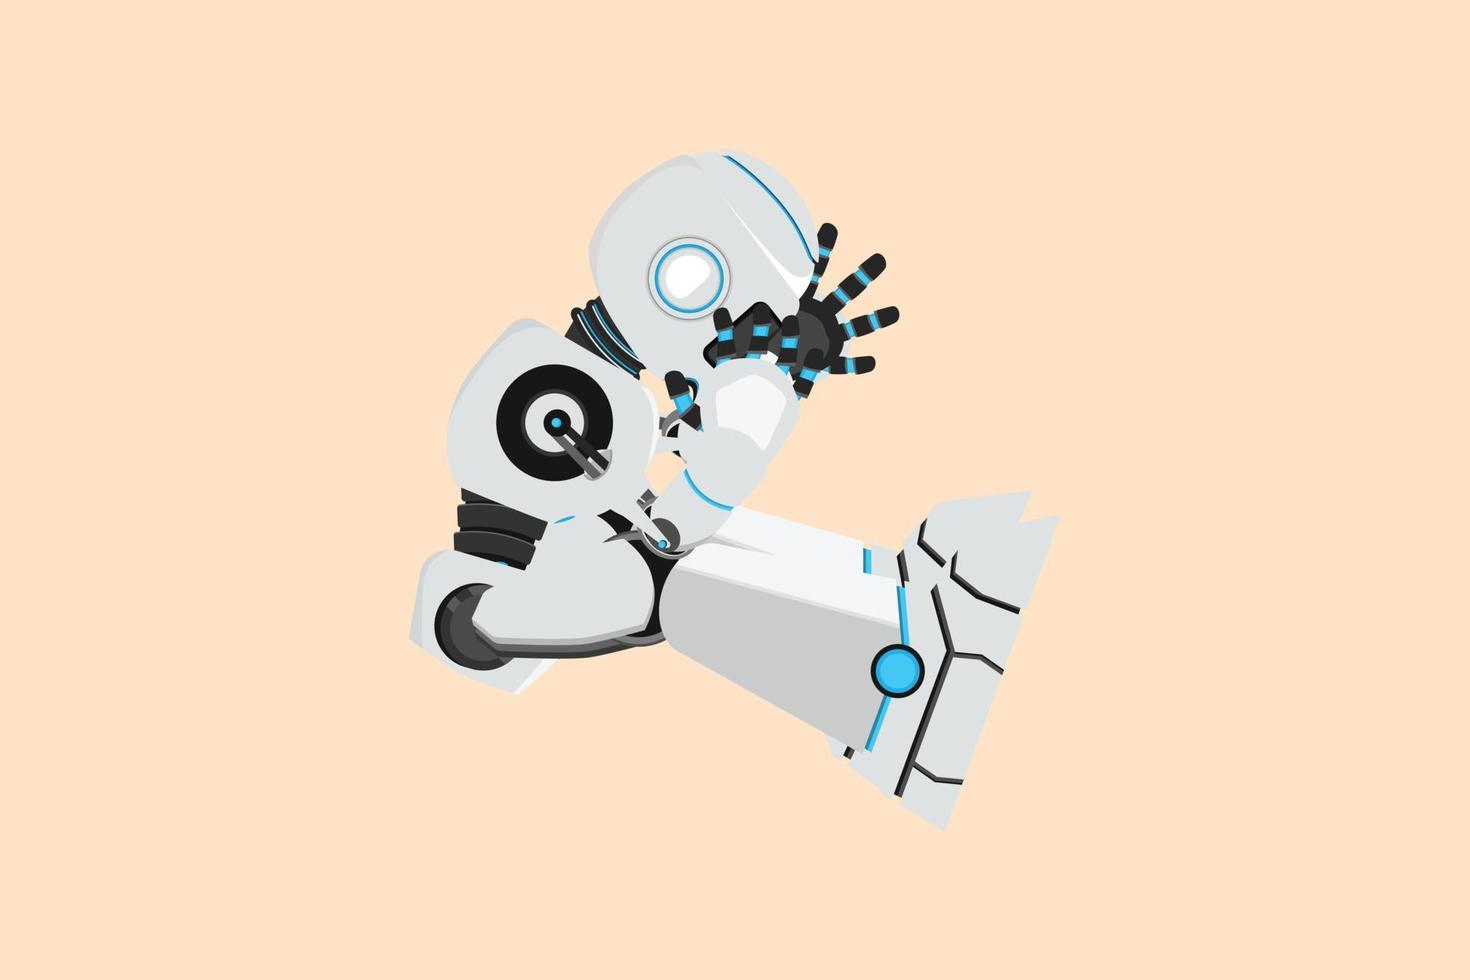 Business-Flachzeichnung deprimierter Roboter, der sich traurig fühlt, auf dem Boden zu sitzen. gestresster Cyborg, der seinen Job verliert. humanoider Roboter kybernetischer Organismus. zukünftige Roboterentwicklung. Cartoon-Design-Vektor-Illustration vektor